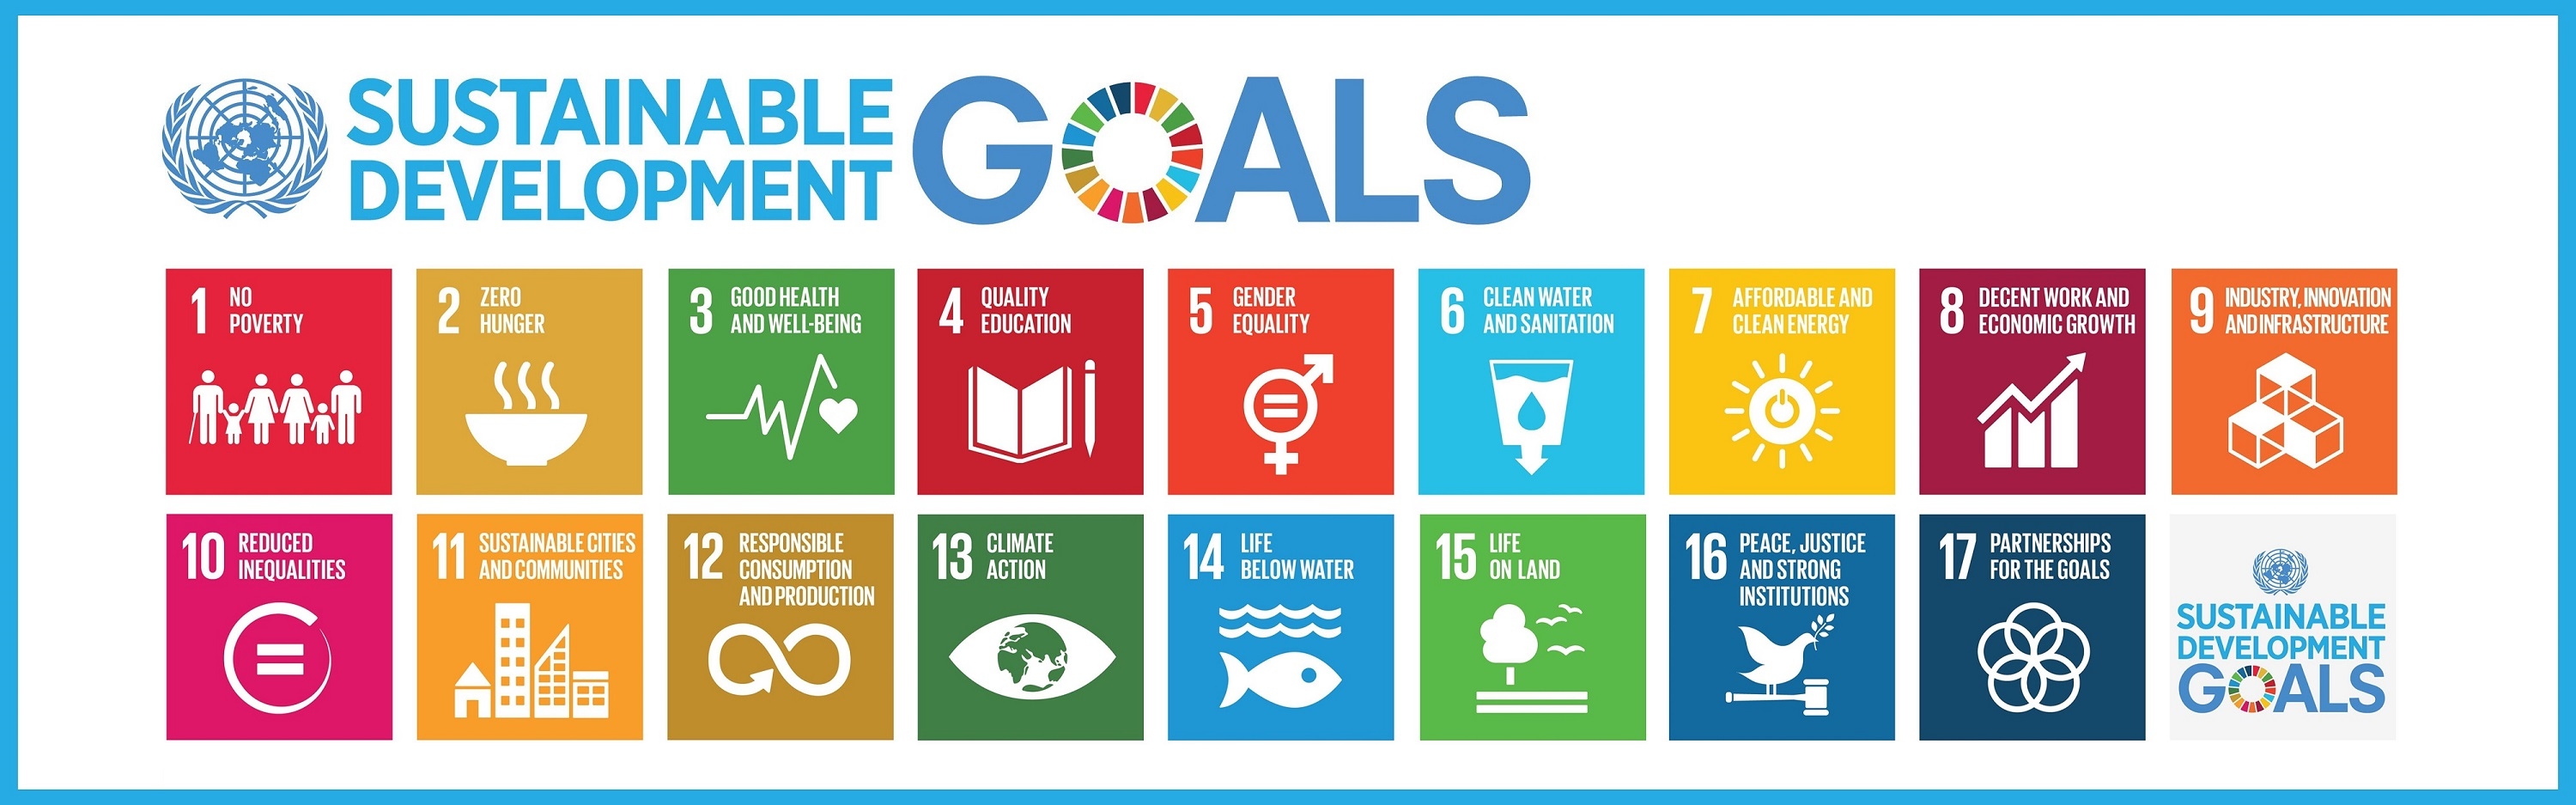 SDGs-sustainable-goals